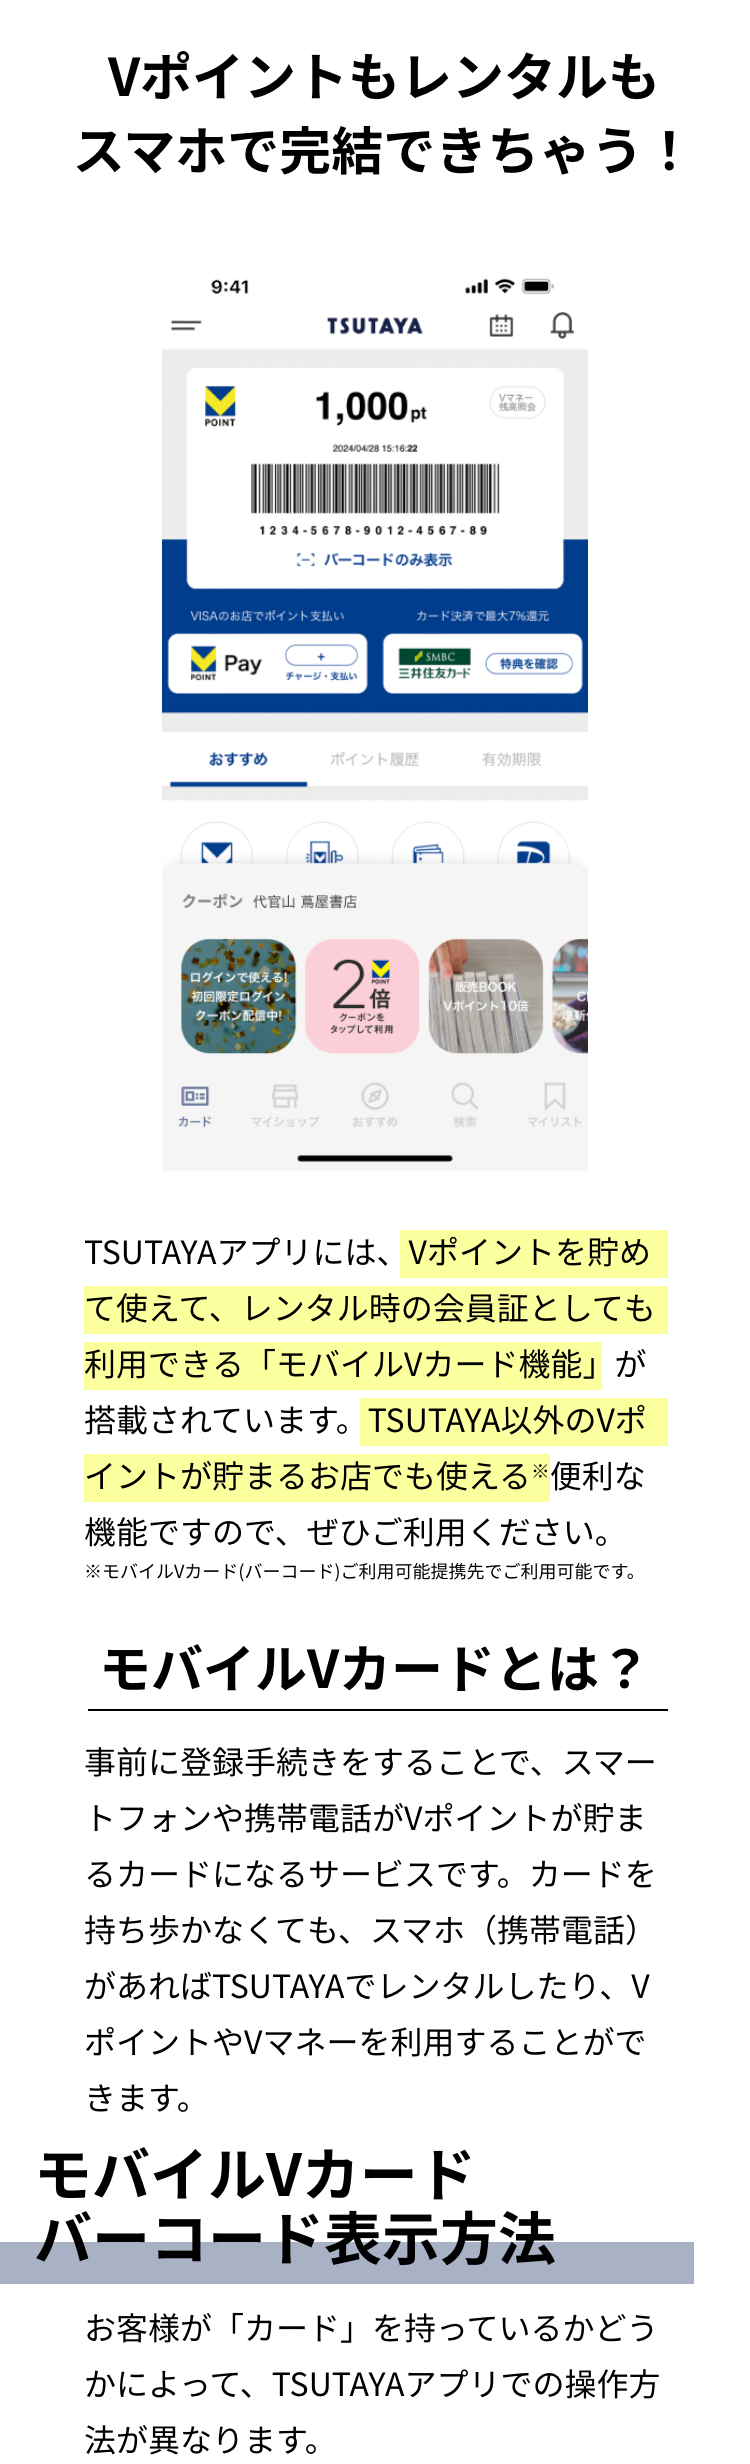  TSUTAYAアプリのモバイルVカードは、レンタル利用時の会員証として利用することができます。ぜひ、事前に登録手続きをしてTSUTAYAのカードレス生活を楽しみましょう。